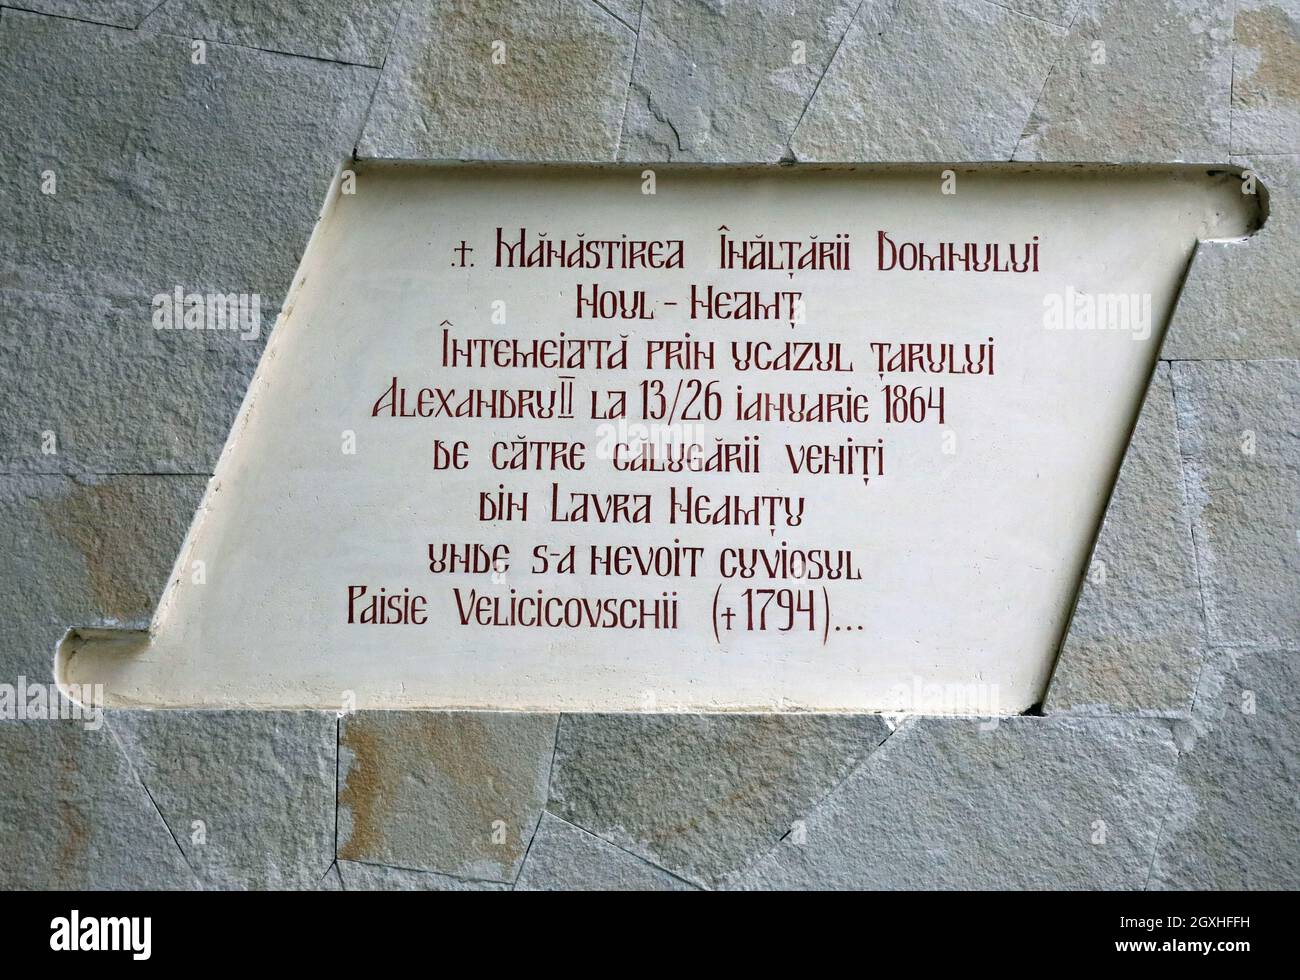 Gedenktafel am Noul-Neamt-Kloster in Transnistria Stockfoto